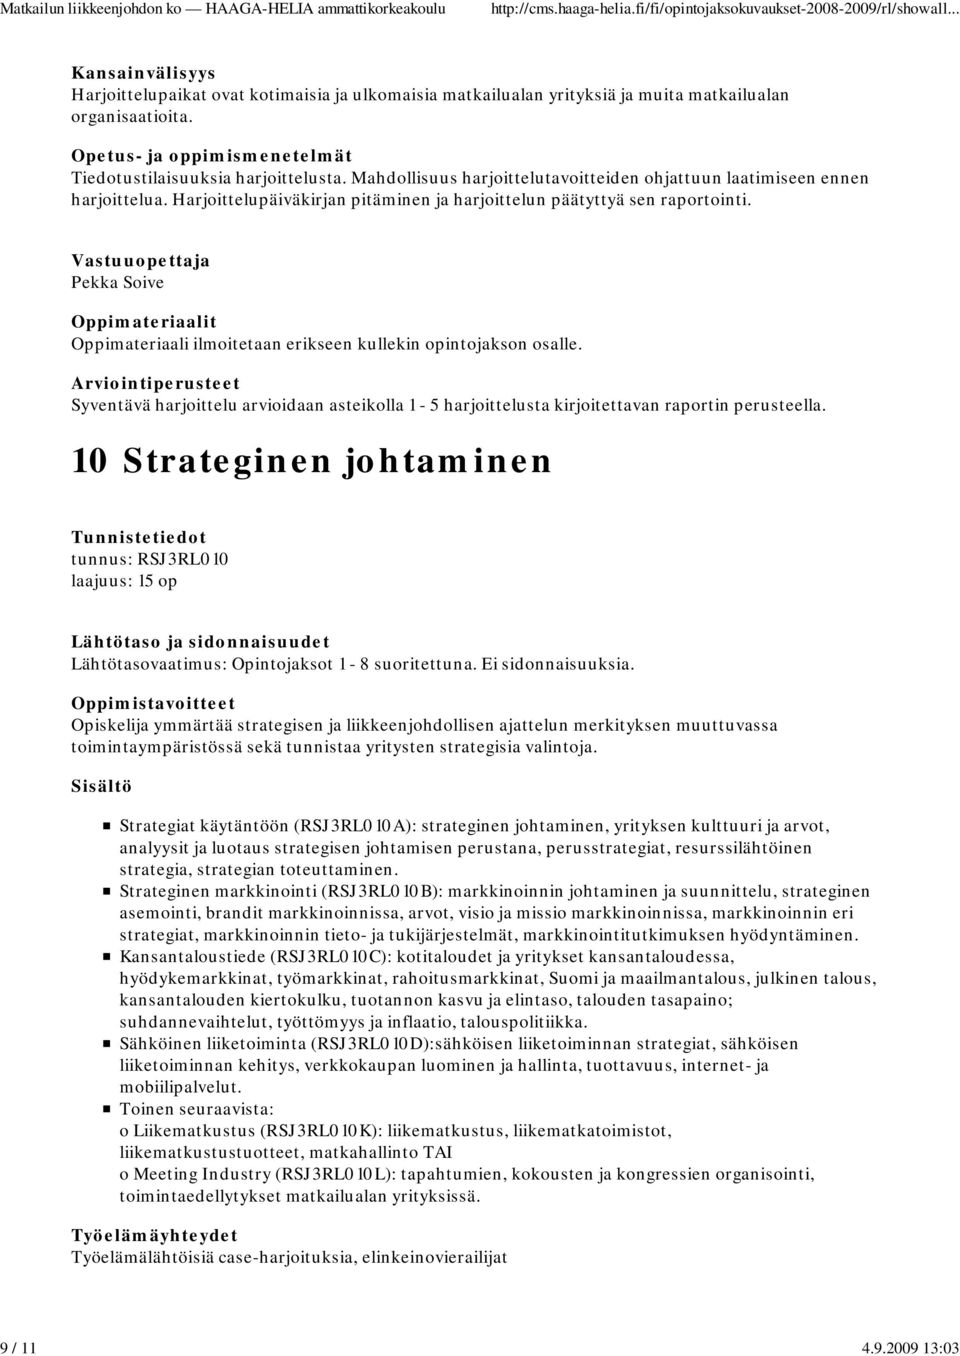 Pekka Soive Syventävä harjoittelu arvioidaan asteikolla 1-5 harjoittelusta kirjoitettavan raportin perusteella.